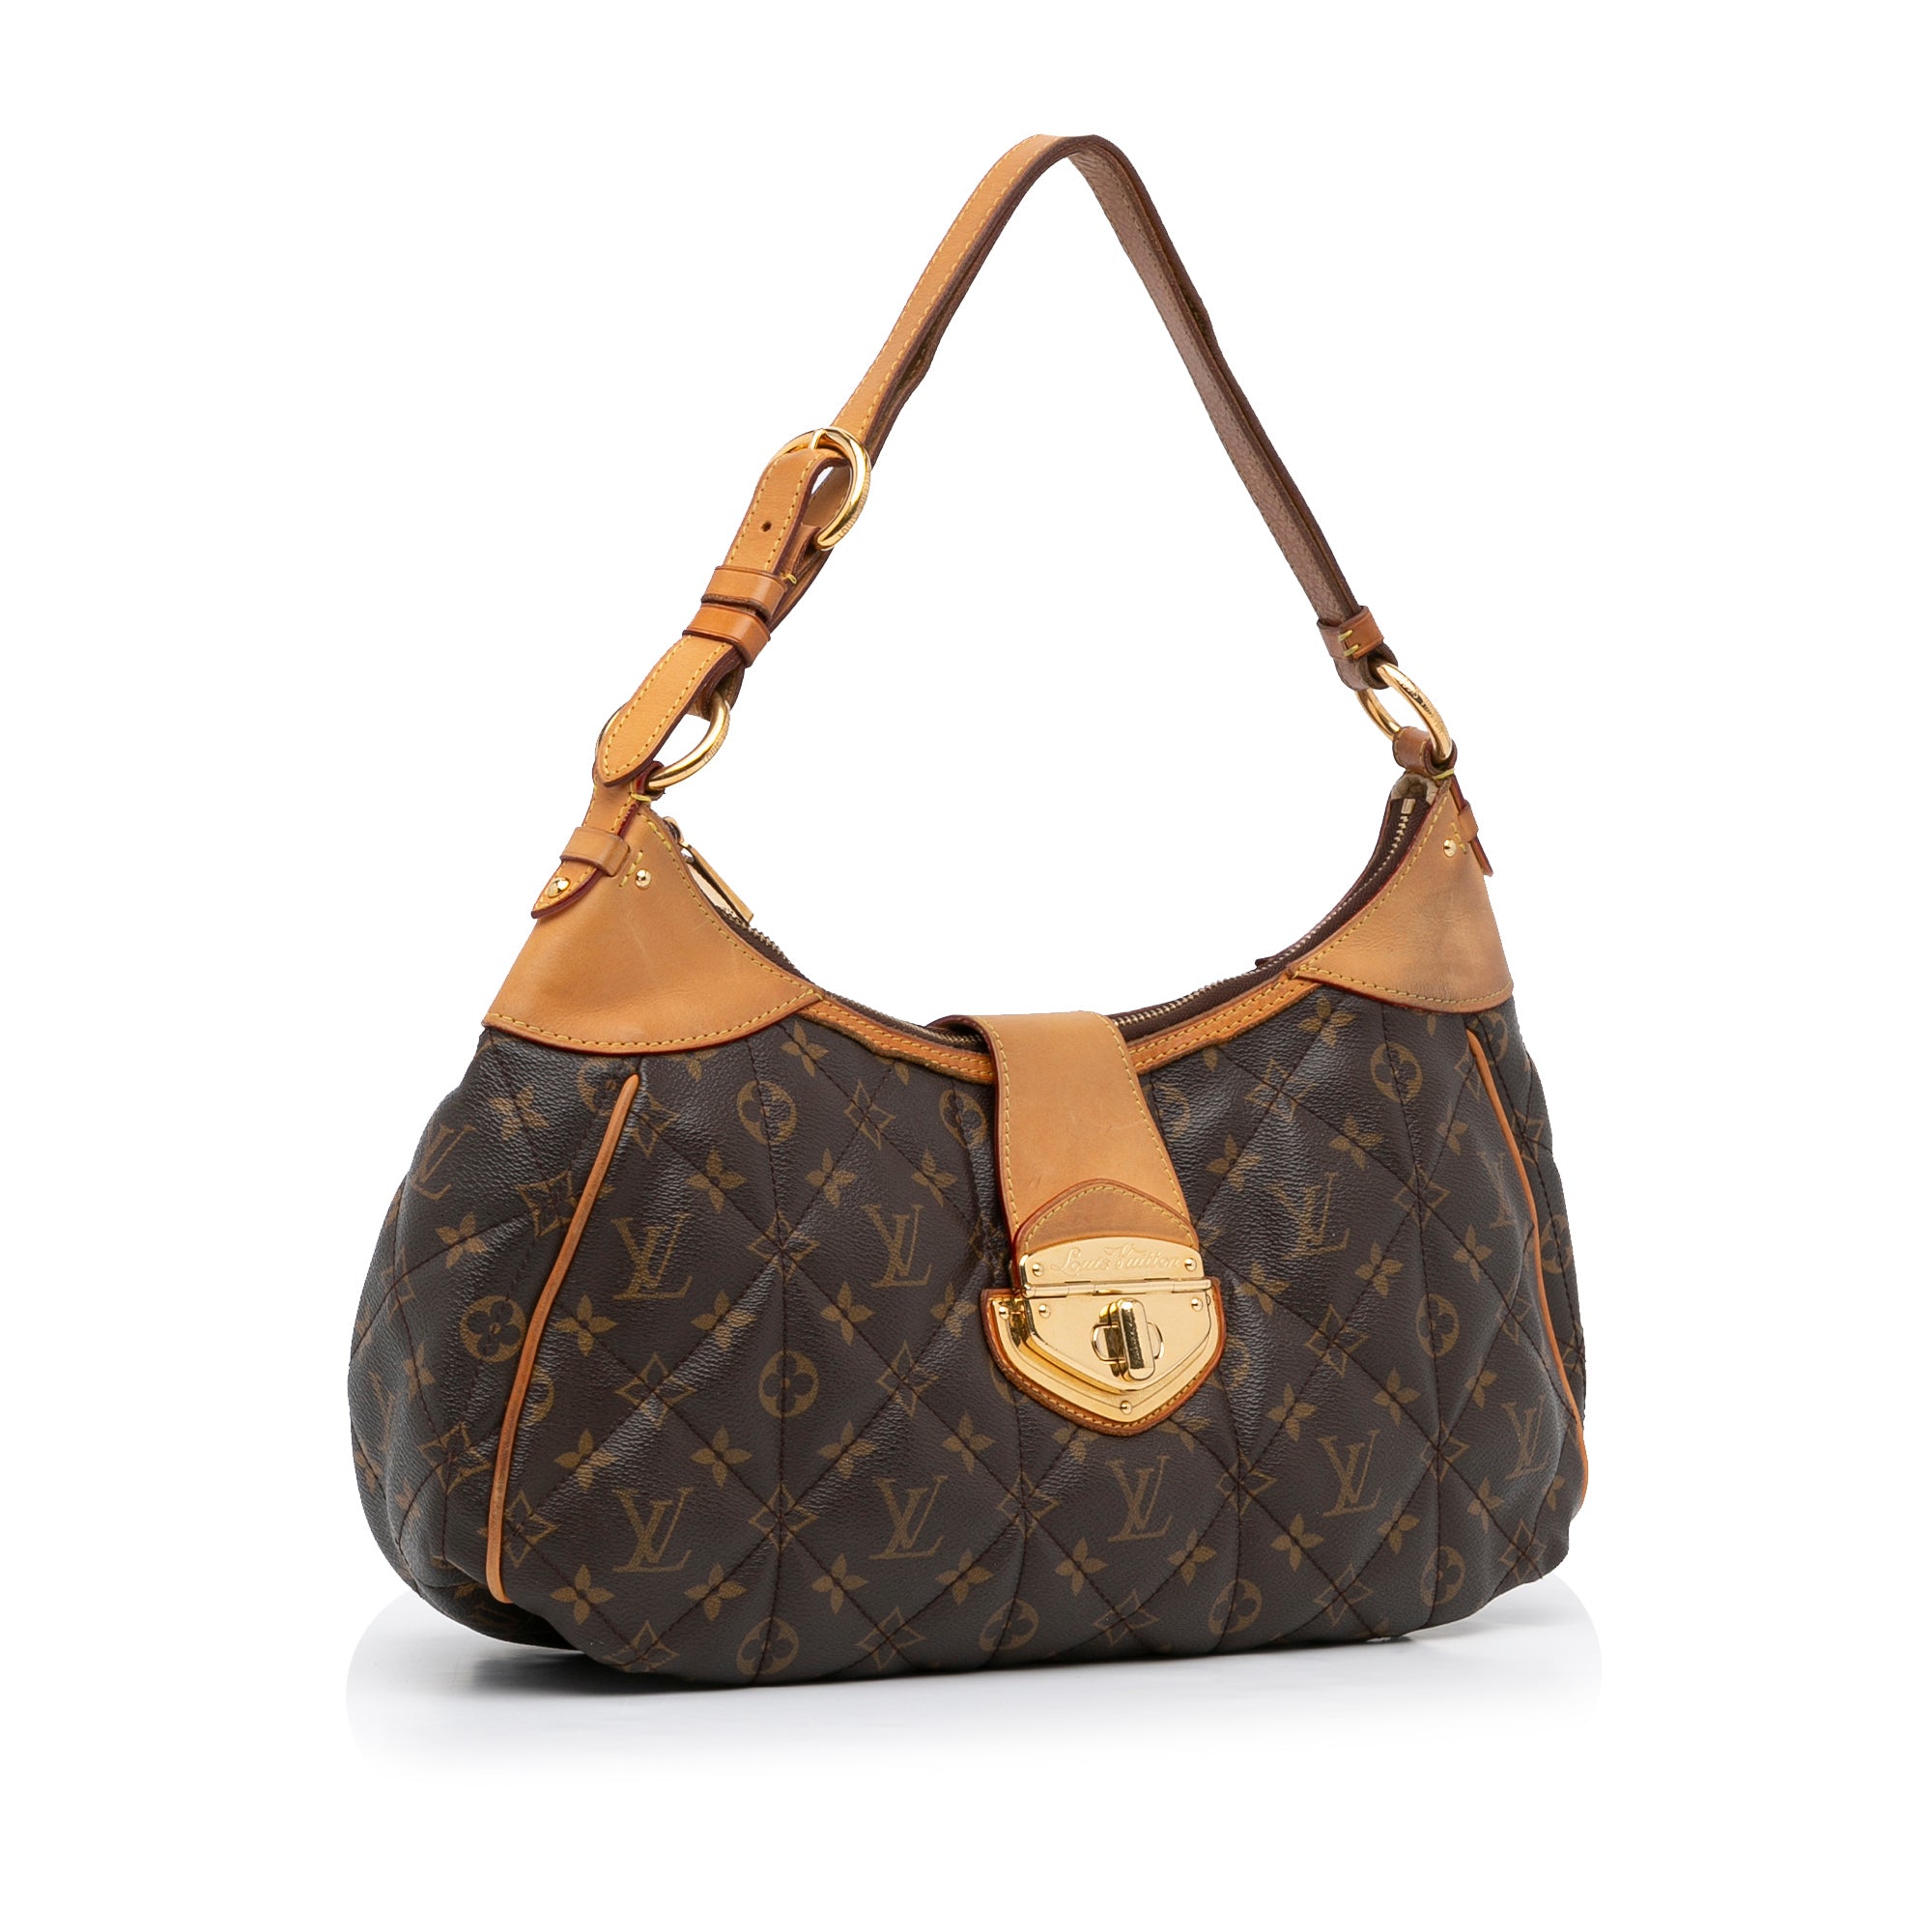 Etoile cloth handbag Louis Vuitton Brown in Cloth - 31634912